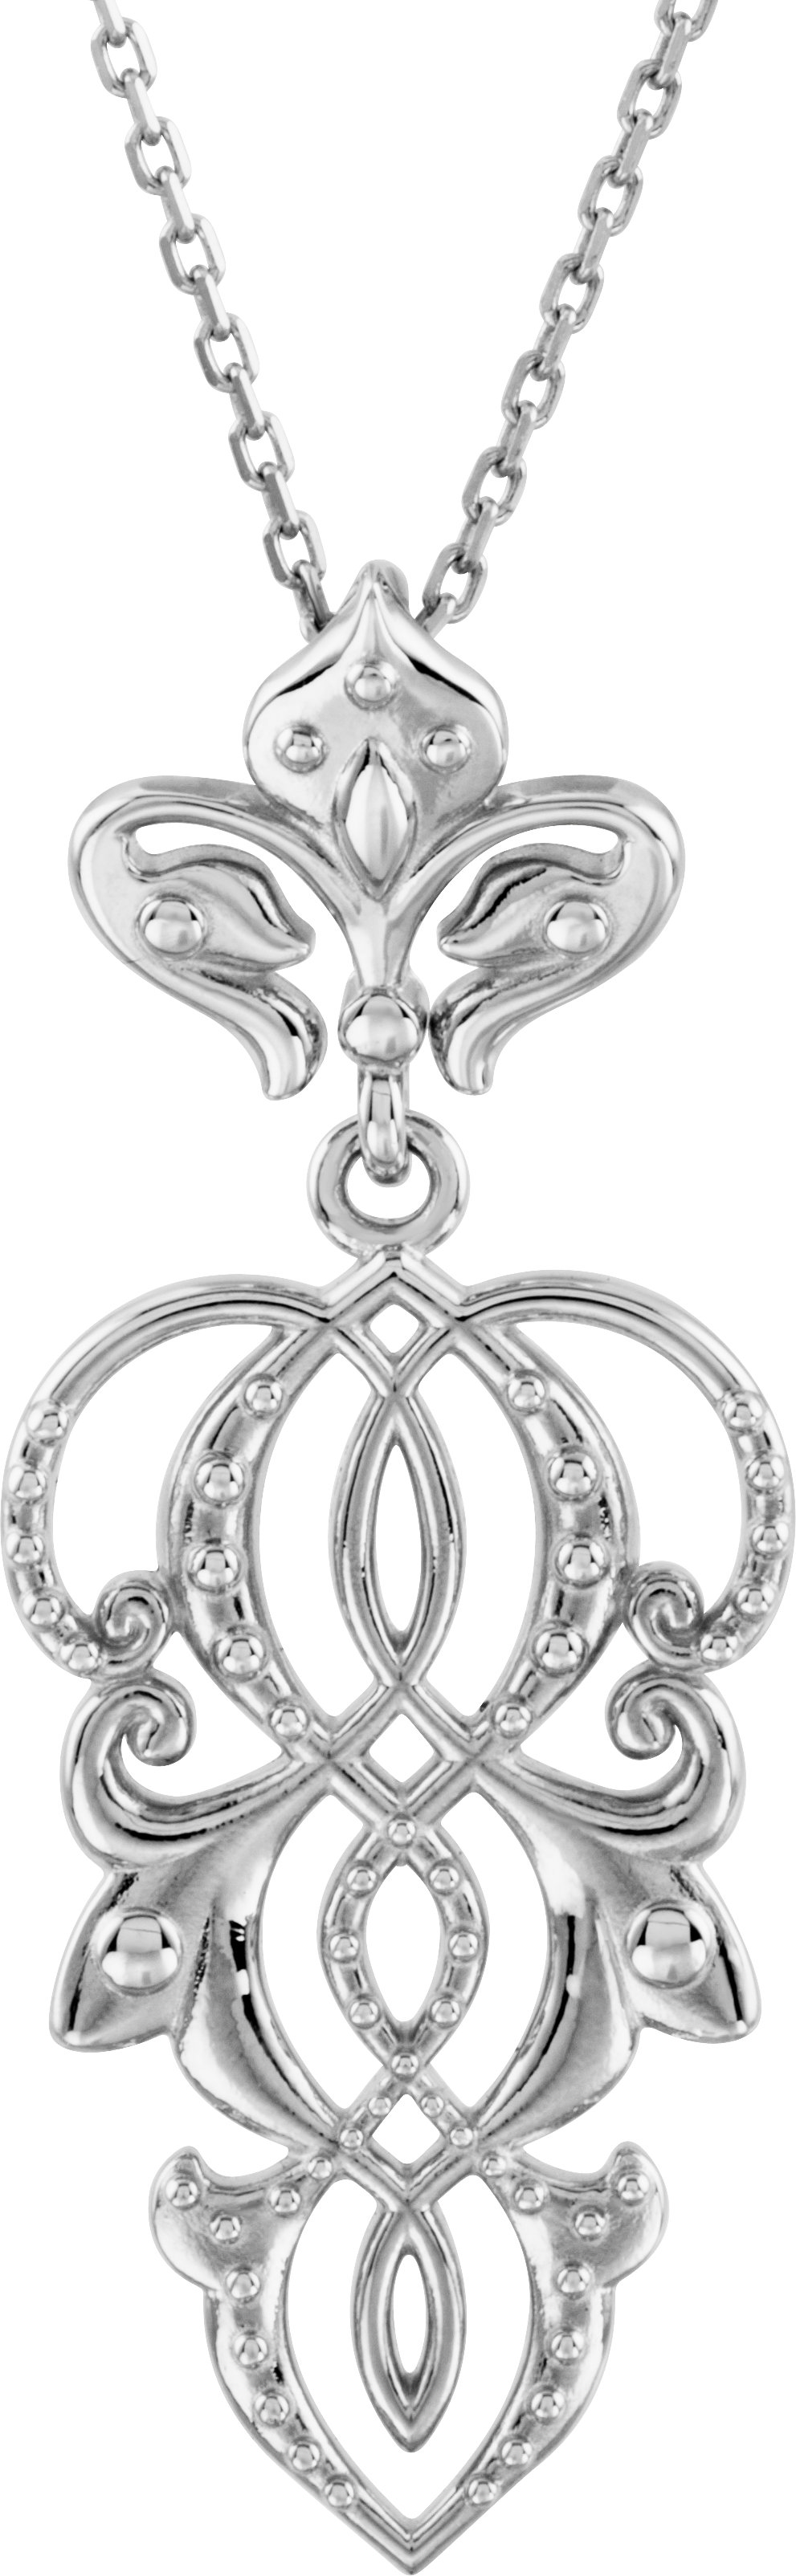 Sterling Silver Fleur-de-lis 18" Necklace